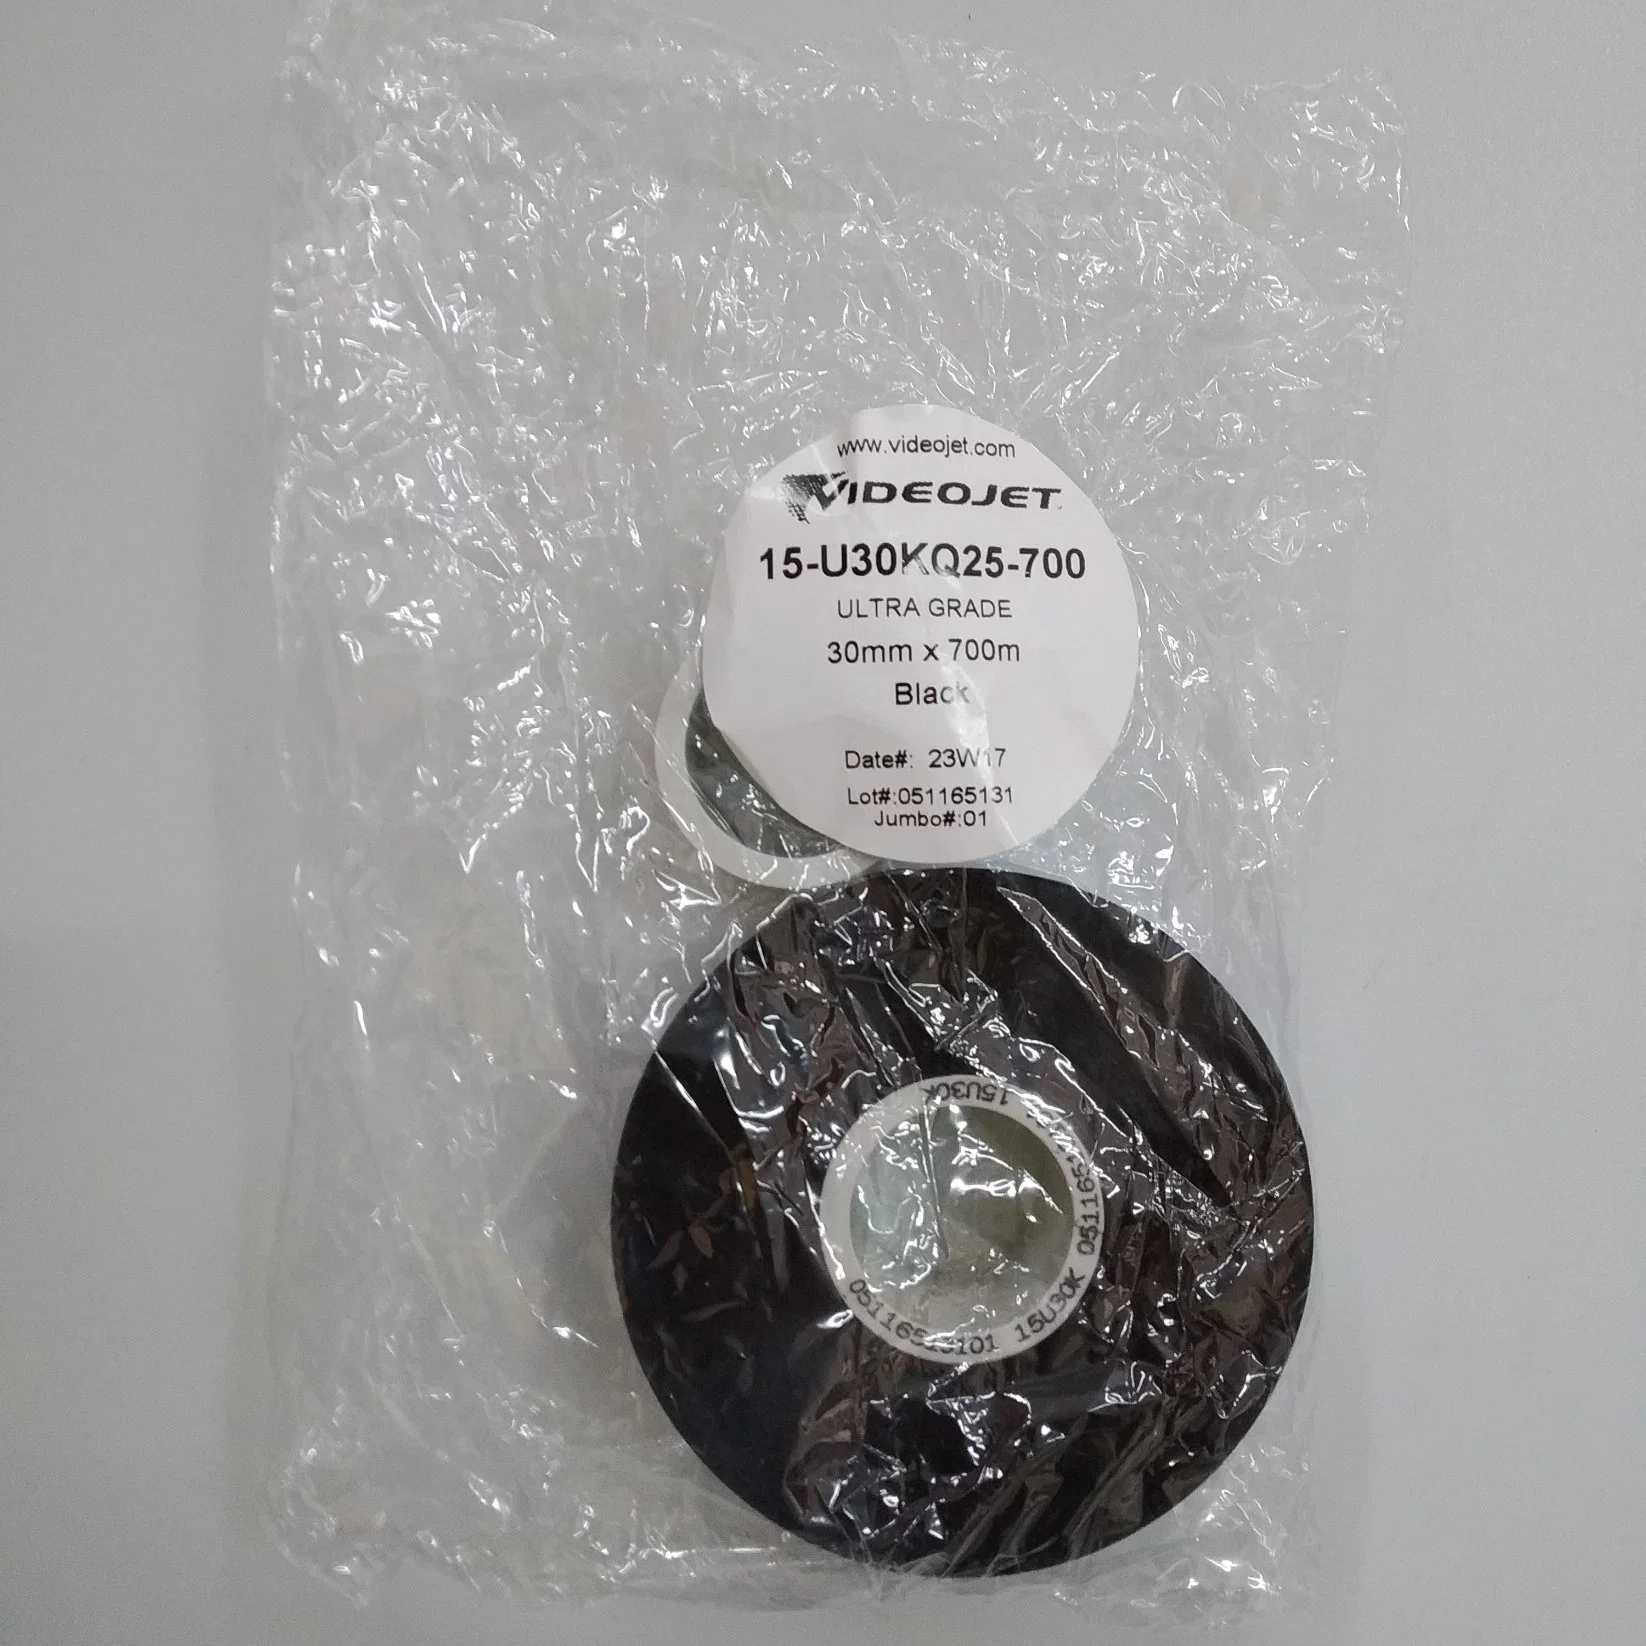 VideoJet TTO cinta resina Negro 15-U30kq25-700 33mm X 700m 25 Rollos por caja original para sobreimpresora de transferencia térmica